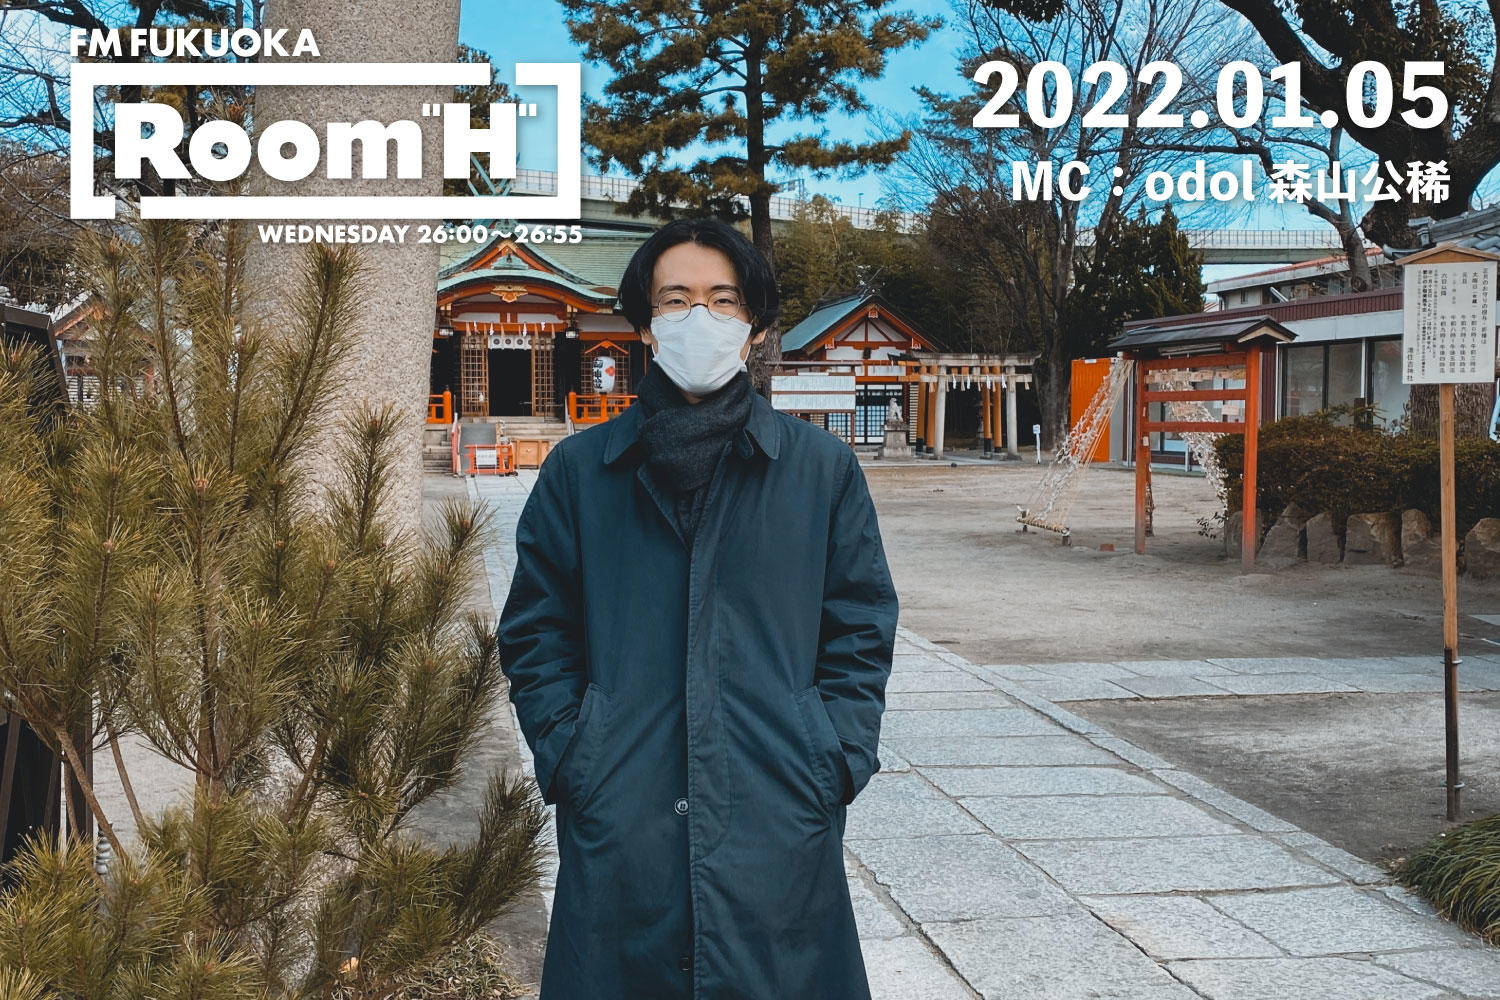 【読むラジオ】MC：森山公稀(odol) 年始めに聴きたい曲を紹介！「Room H」 -2022.01.05-